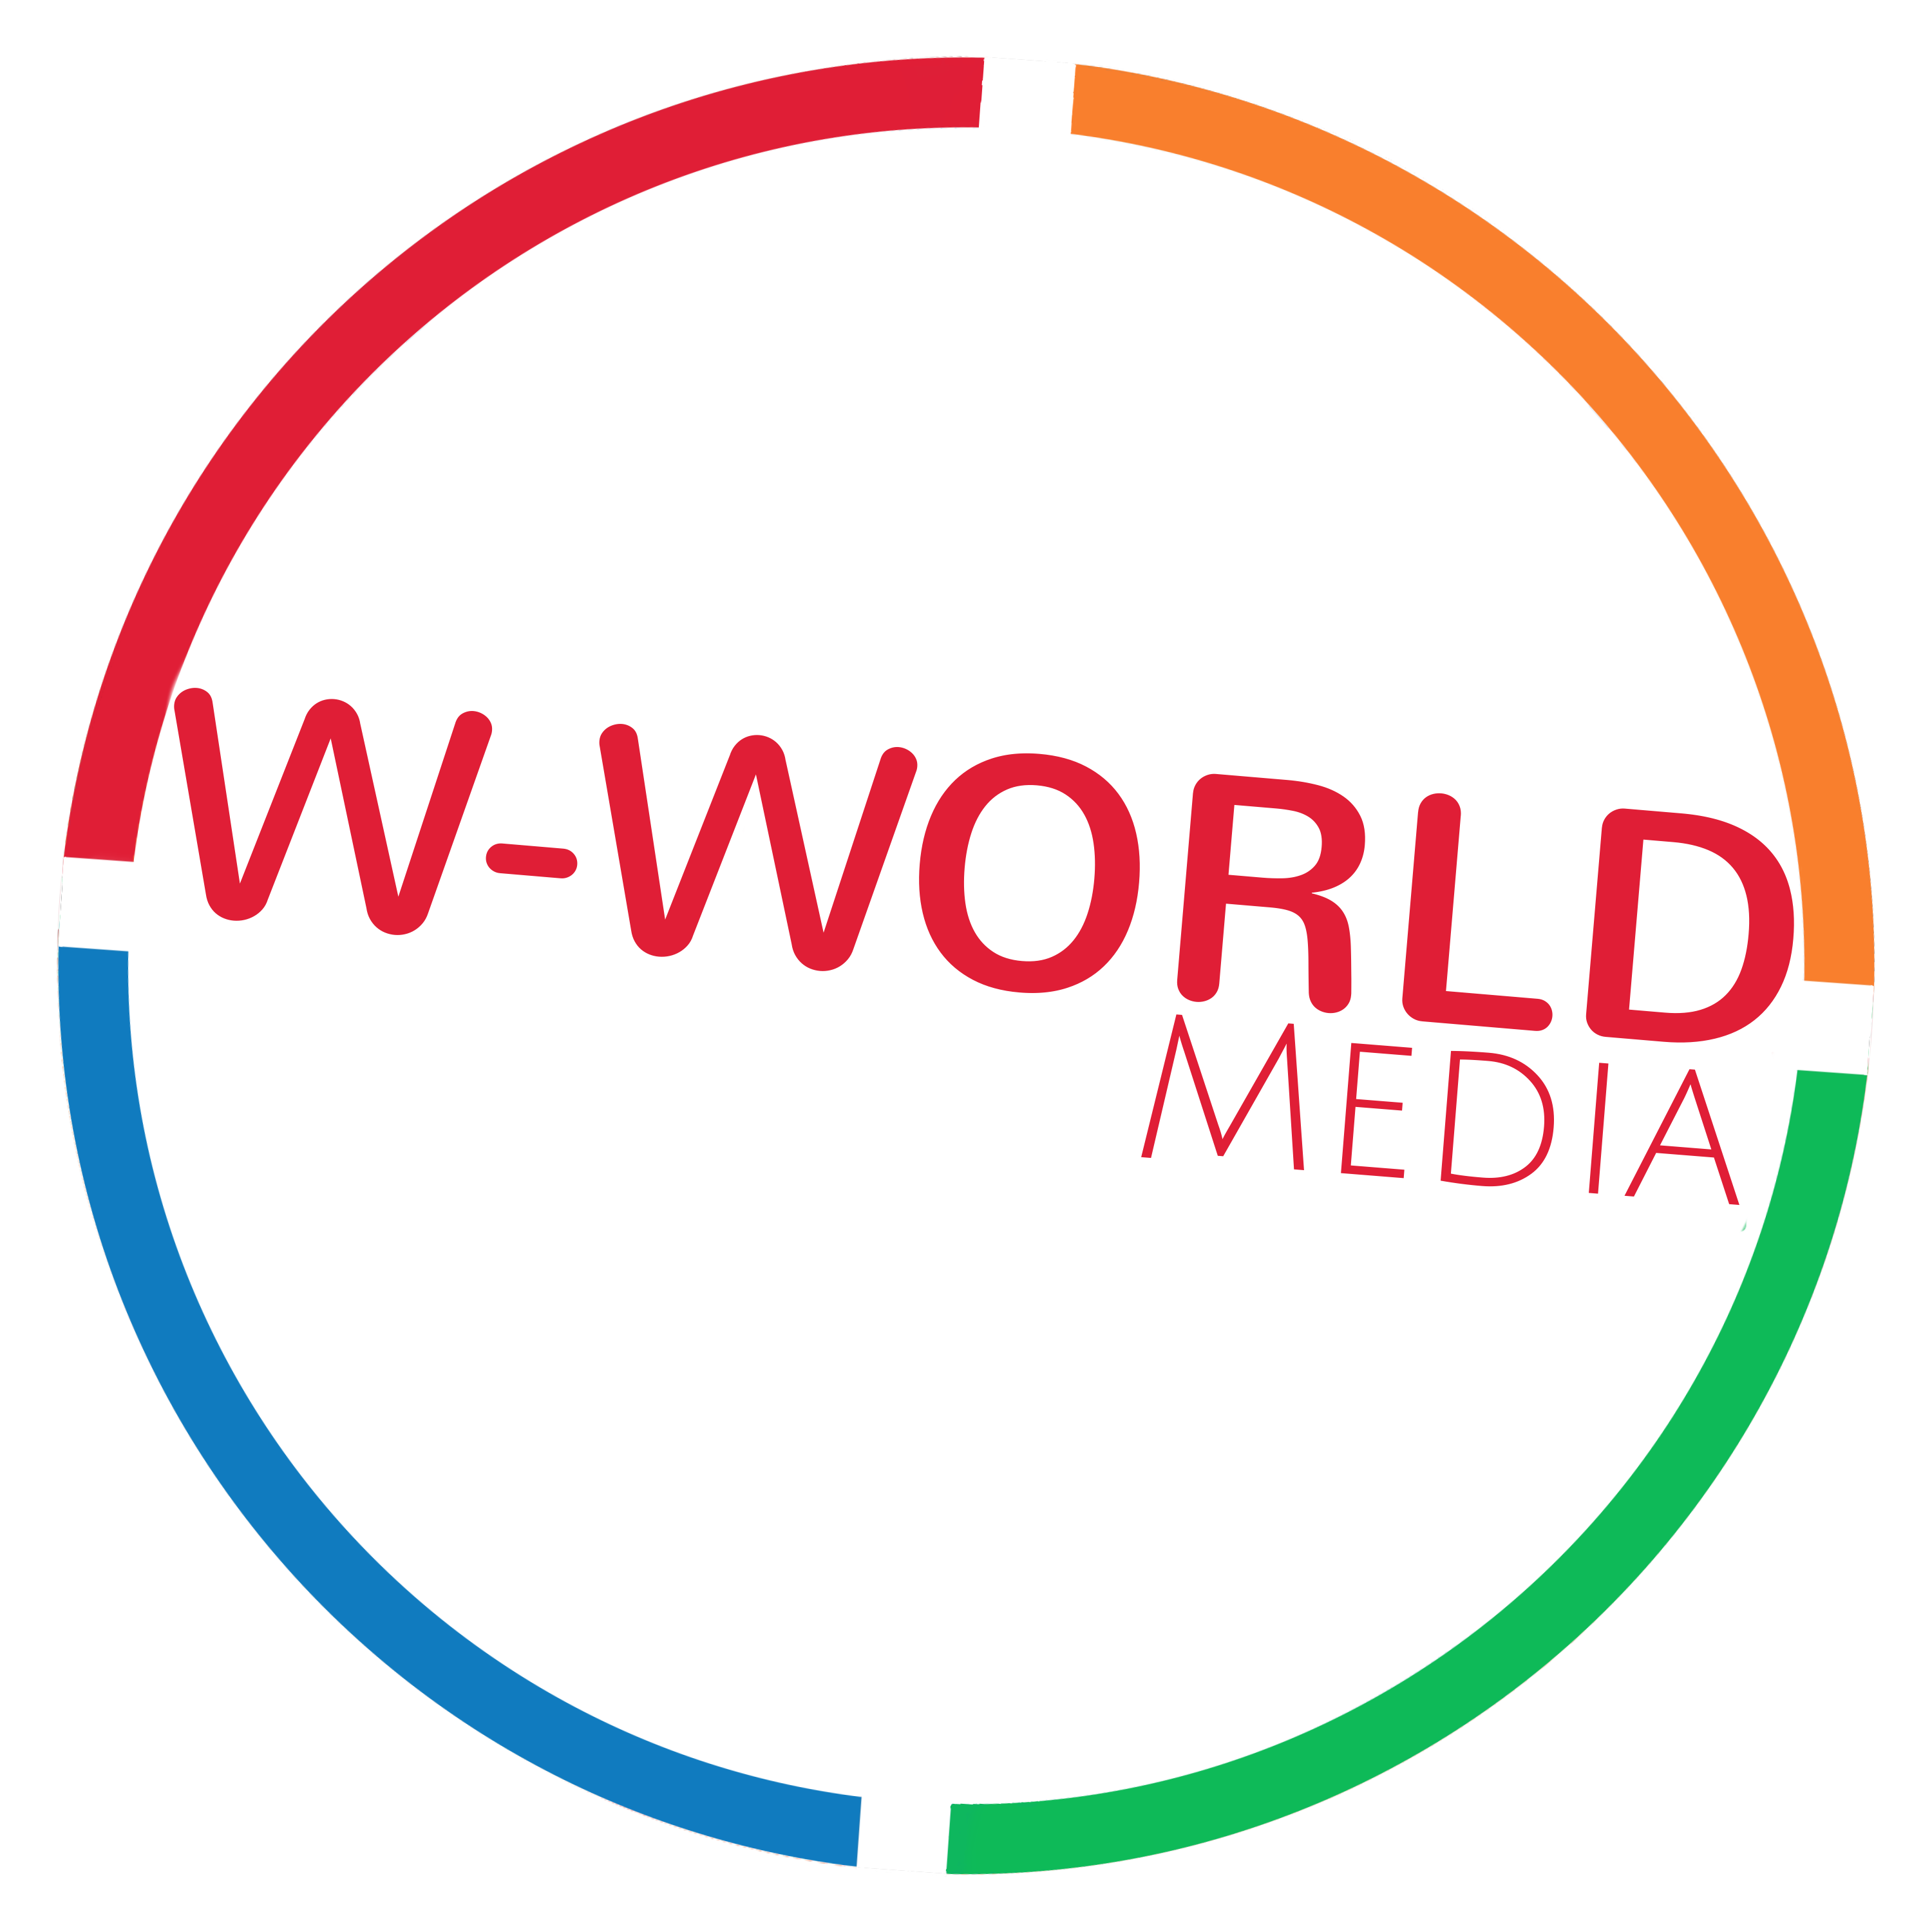 WWorld Media News